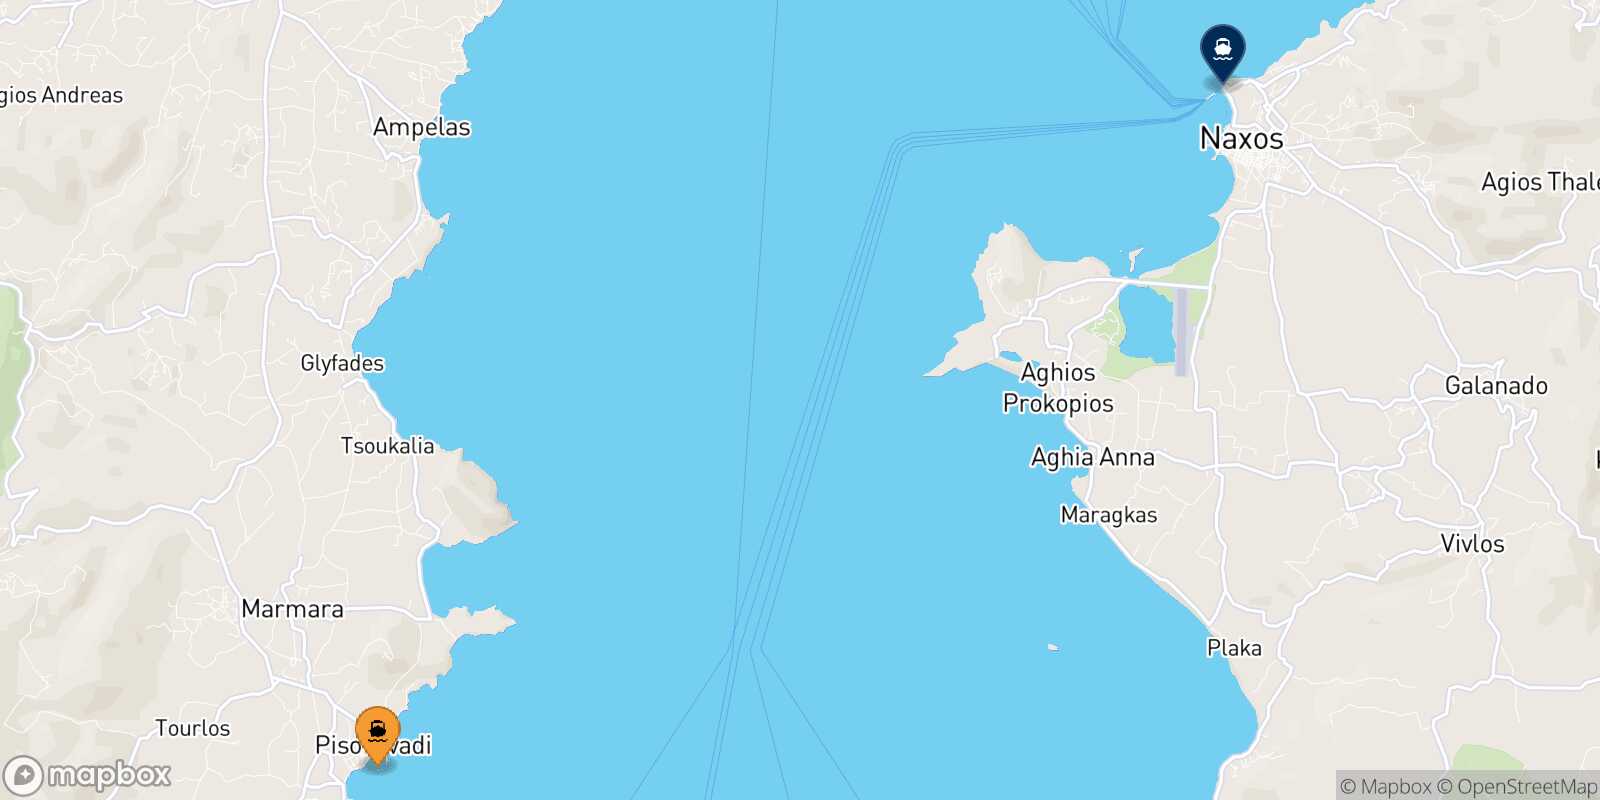 Piso Livadi (Paros) Naxos route map